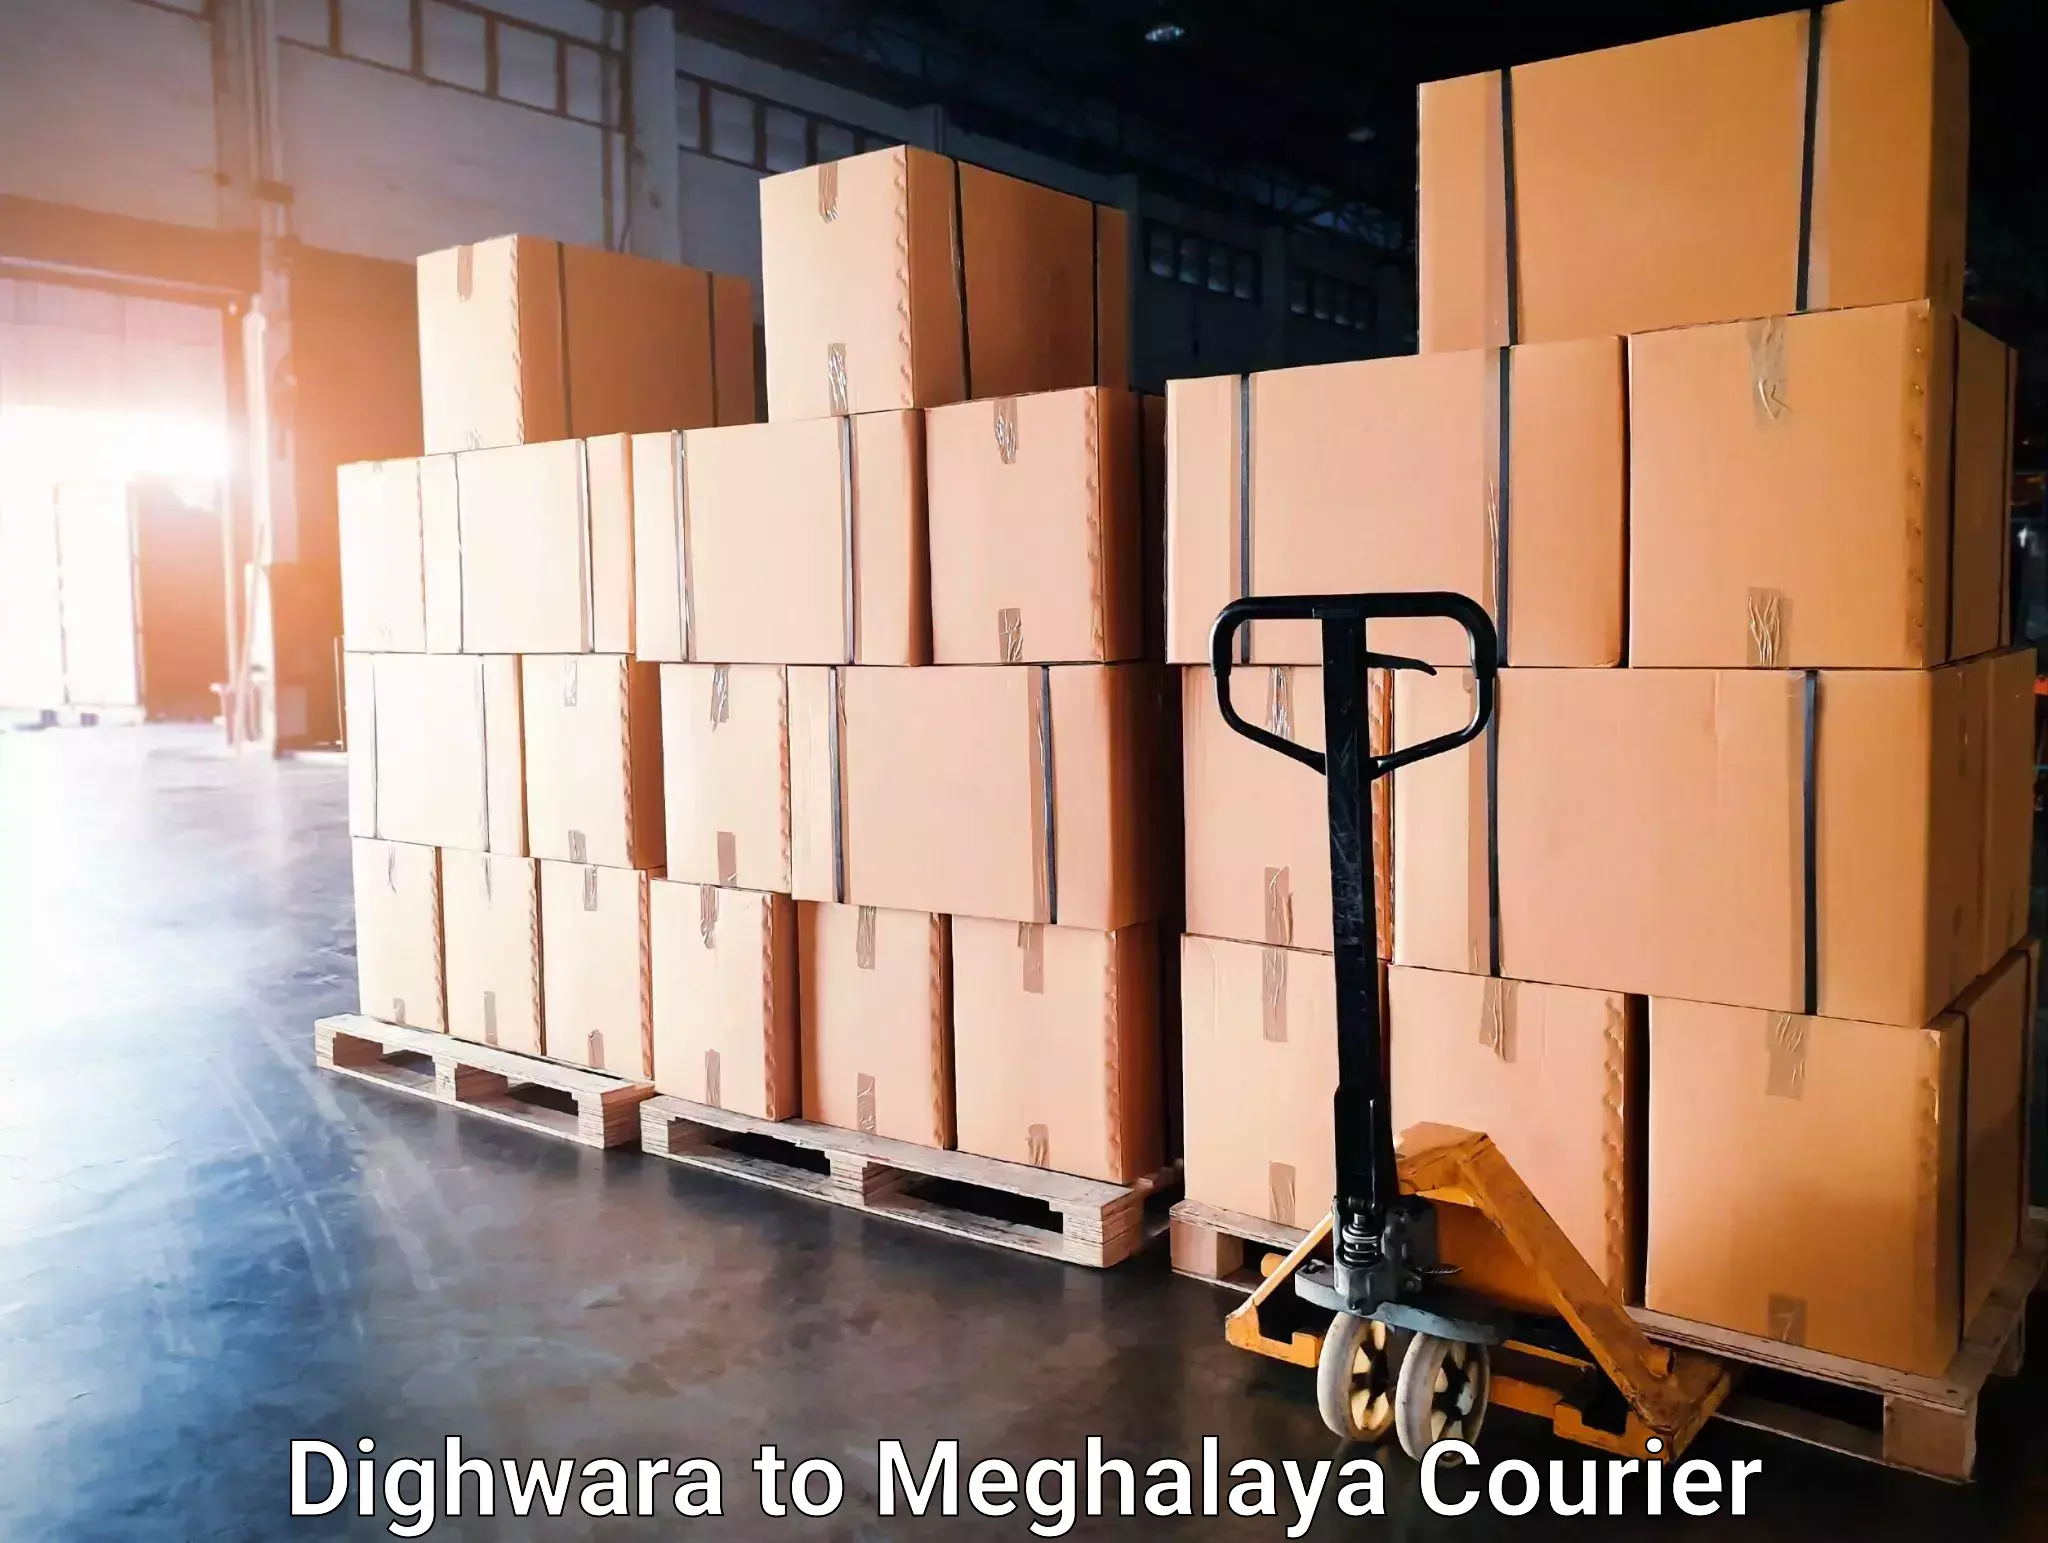 Seamless moving process Dighwara to Shillong